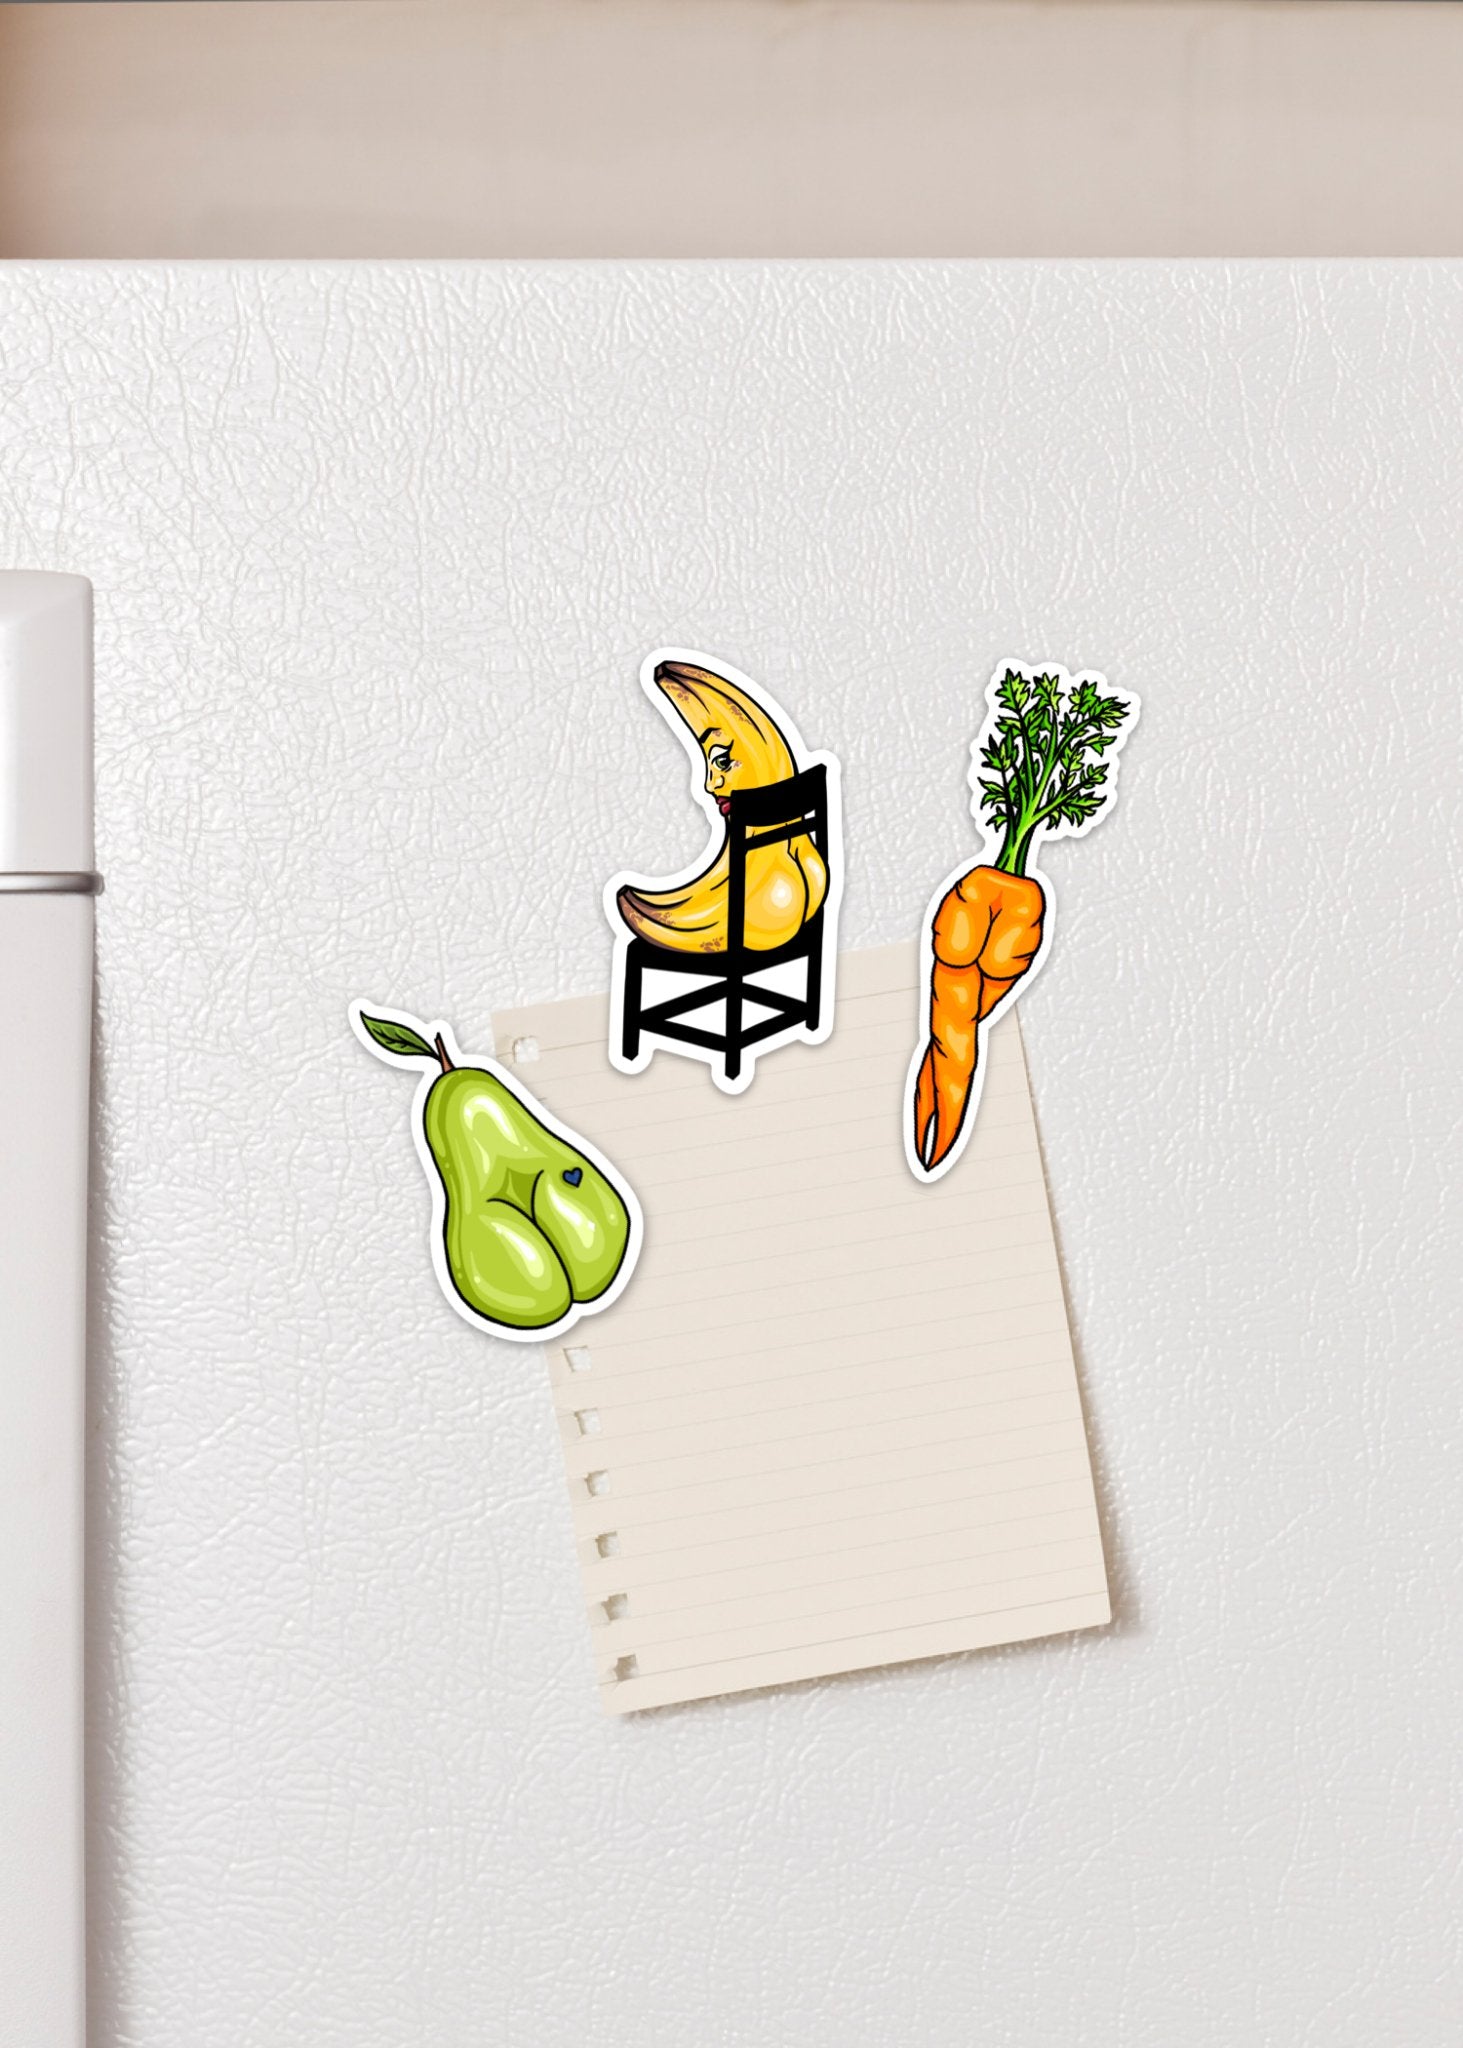 Carrot Booty Fridge Magnet - Cheeky Art Studio-carrot-fridge-gardening